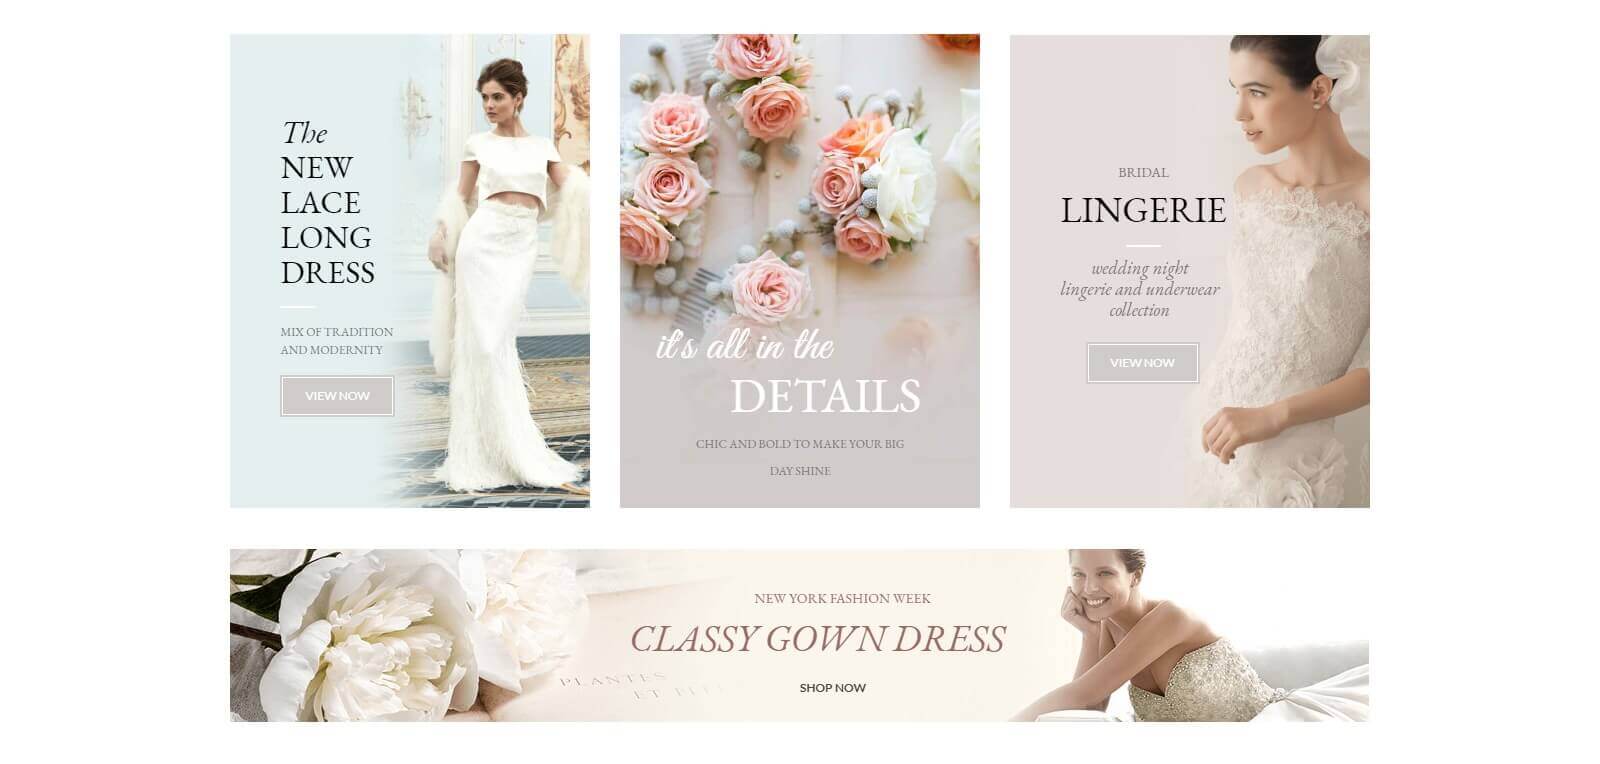 Vì sao cần thiết kế website cho thuê áo cưới